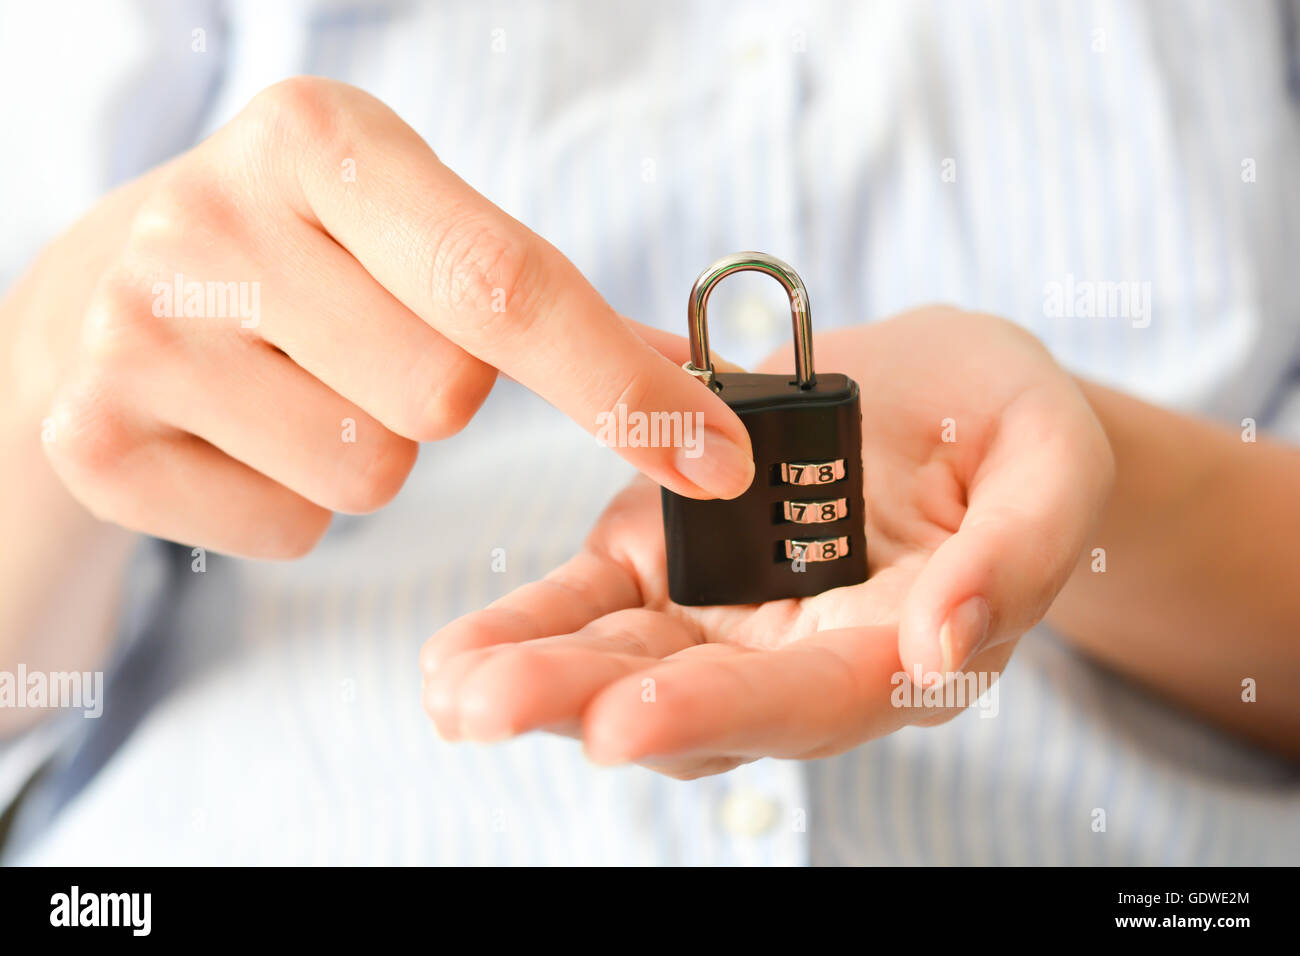 Business Woman holding un verrouillage de chiffrement dans ses mains, ce qui suggère l'assurance-vie ou de la sécurité personnelle Banque D'Images